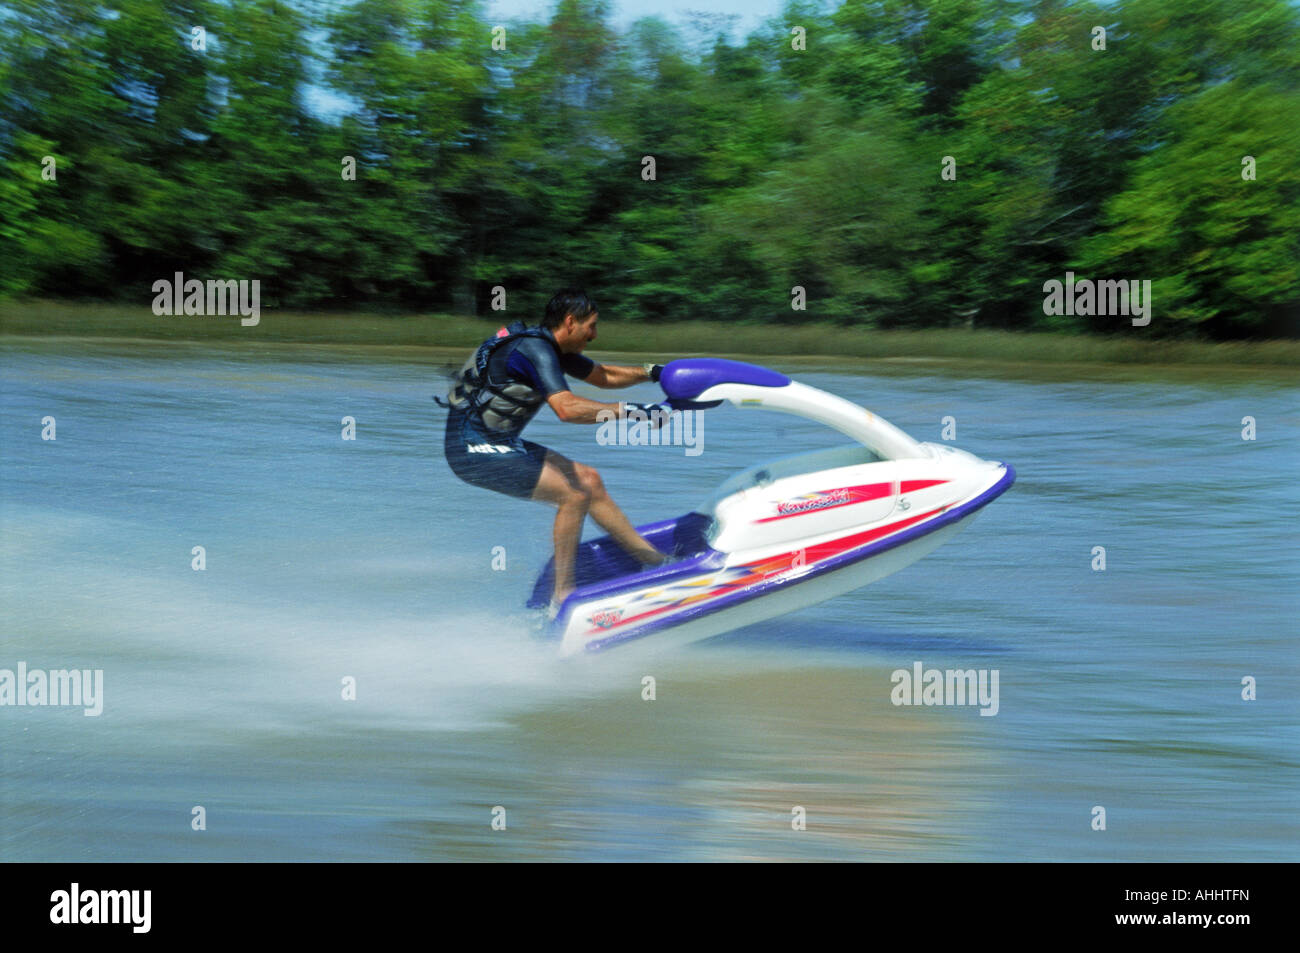 Homme portant un gilet de sauvetage et combinaison de course jet ski sur la rivière Banque D'Images